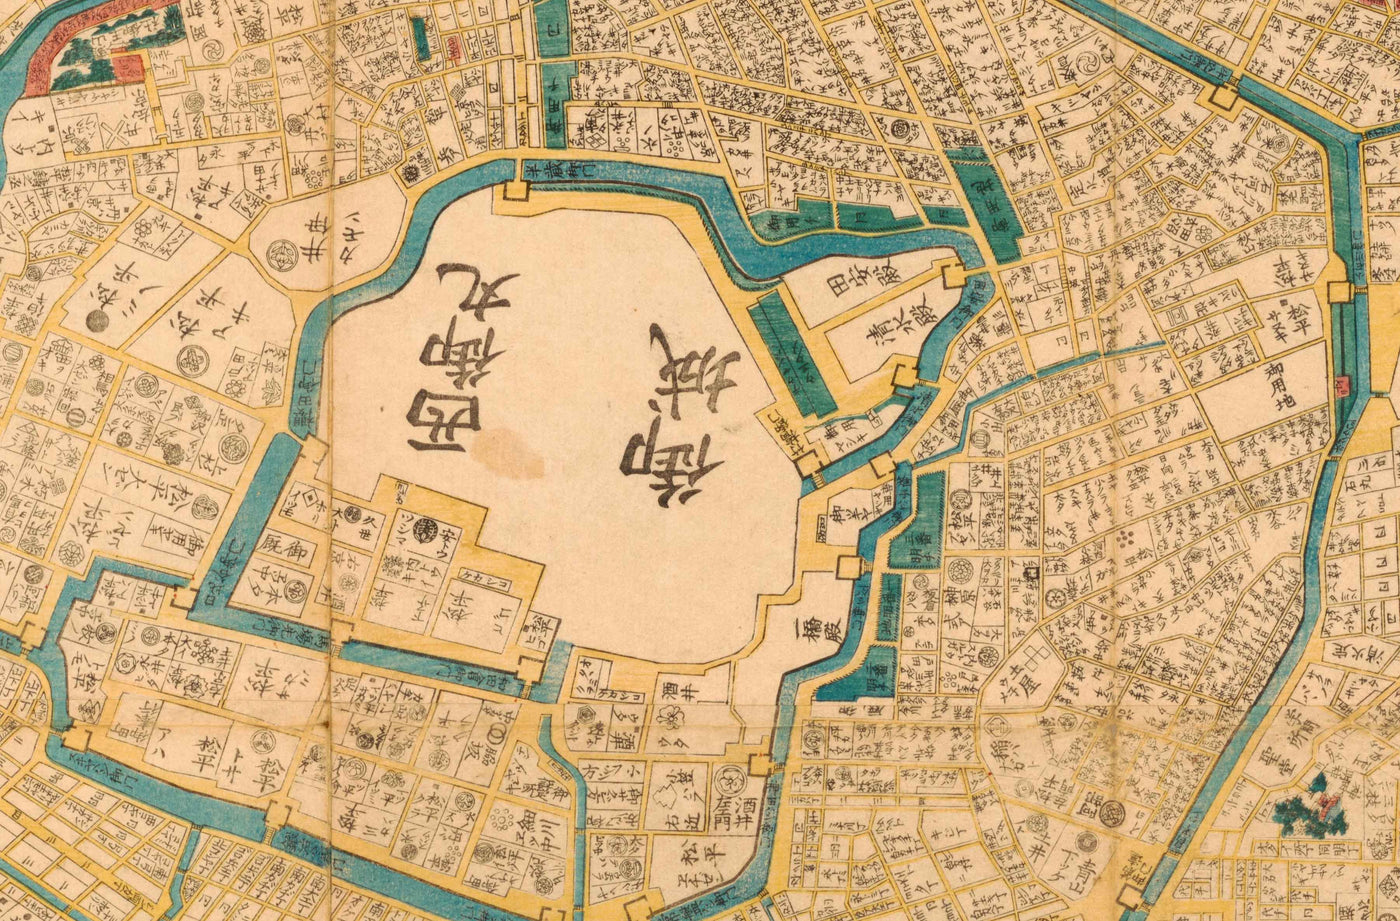 Alte Karte von Tokio im Jahr 1860 von Mohe Subaraya - Yokohama, Kawasaki, Chiba, Minato, Shinjuku